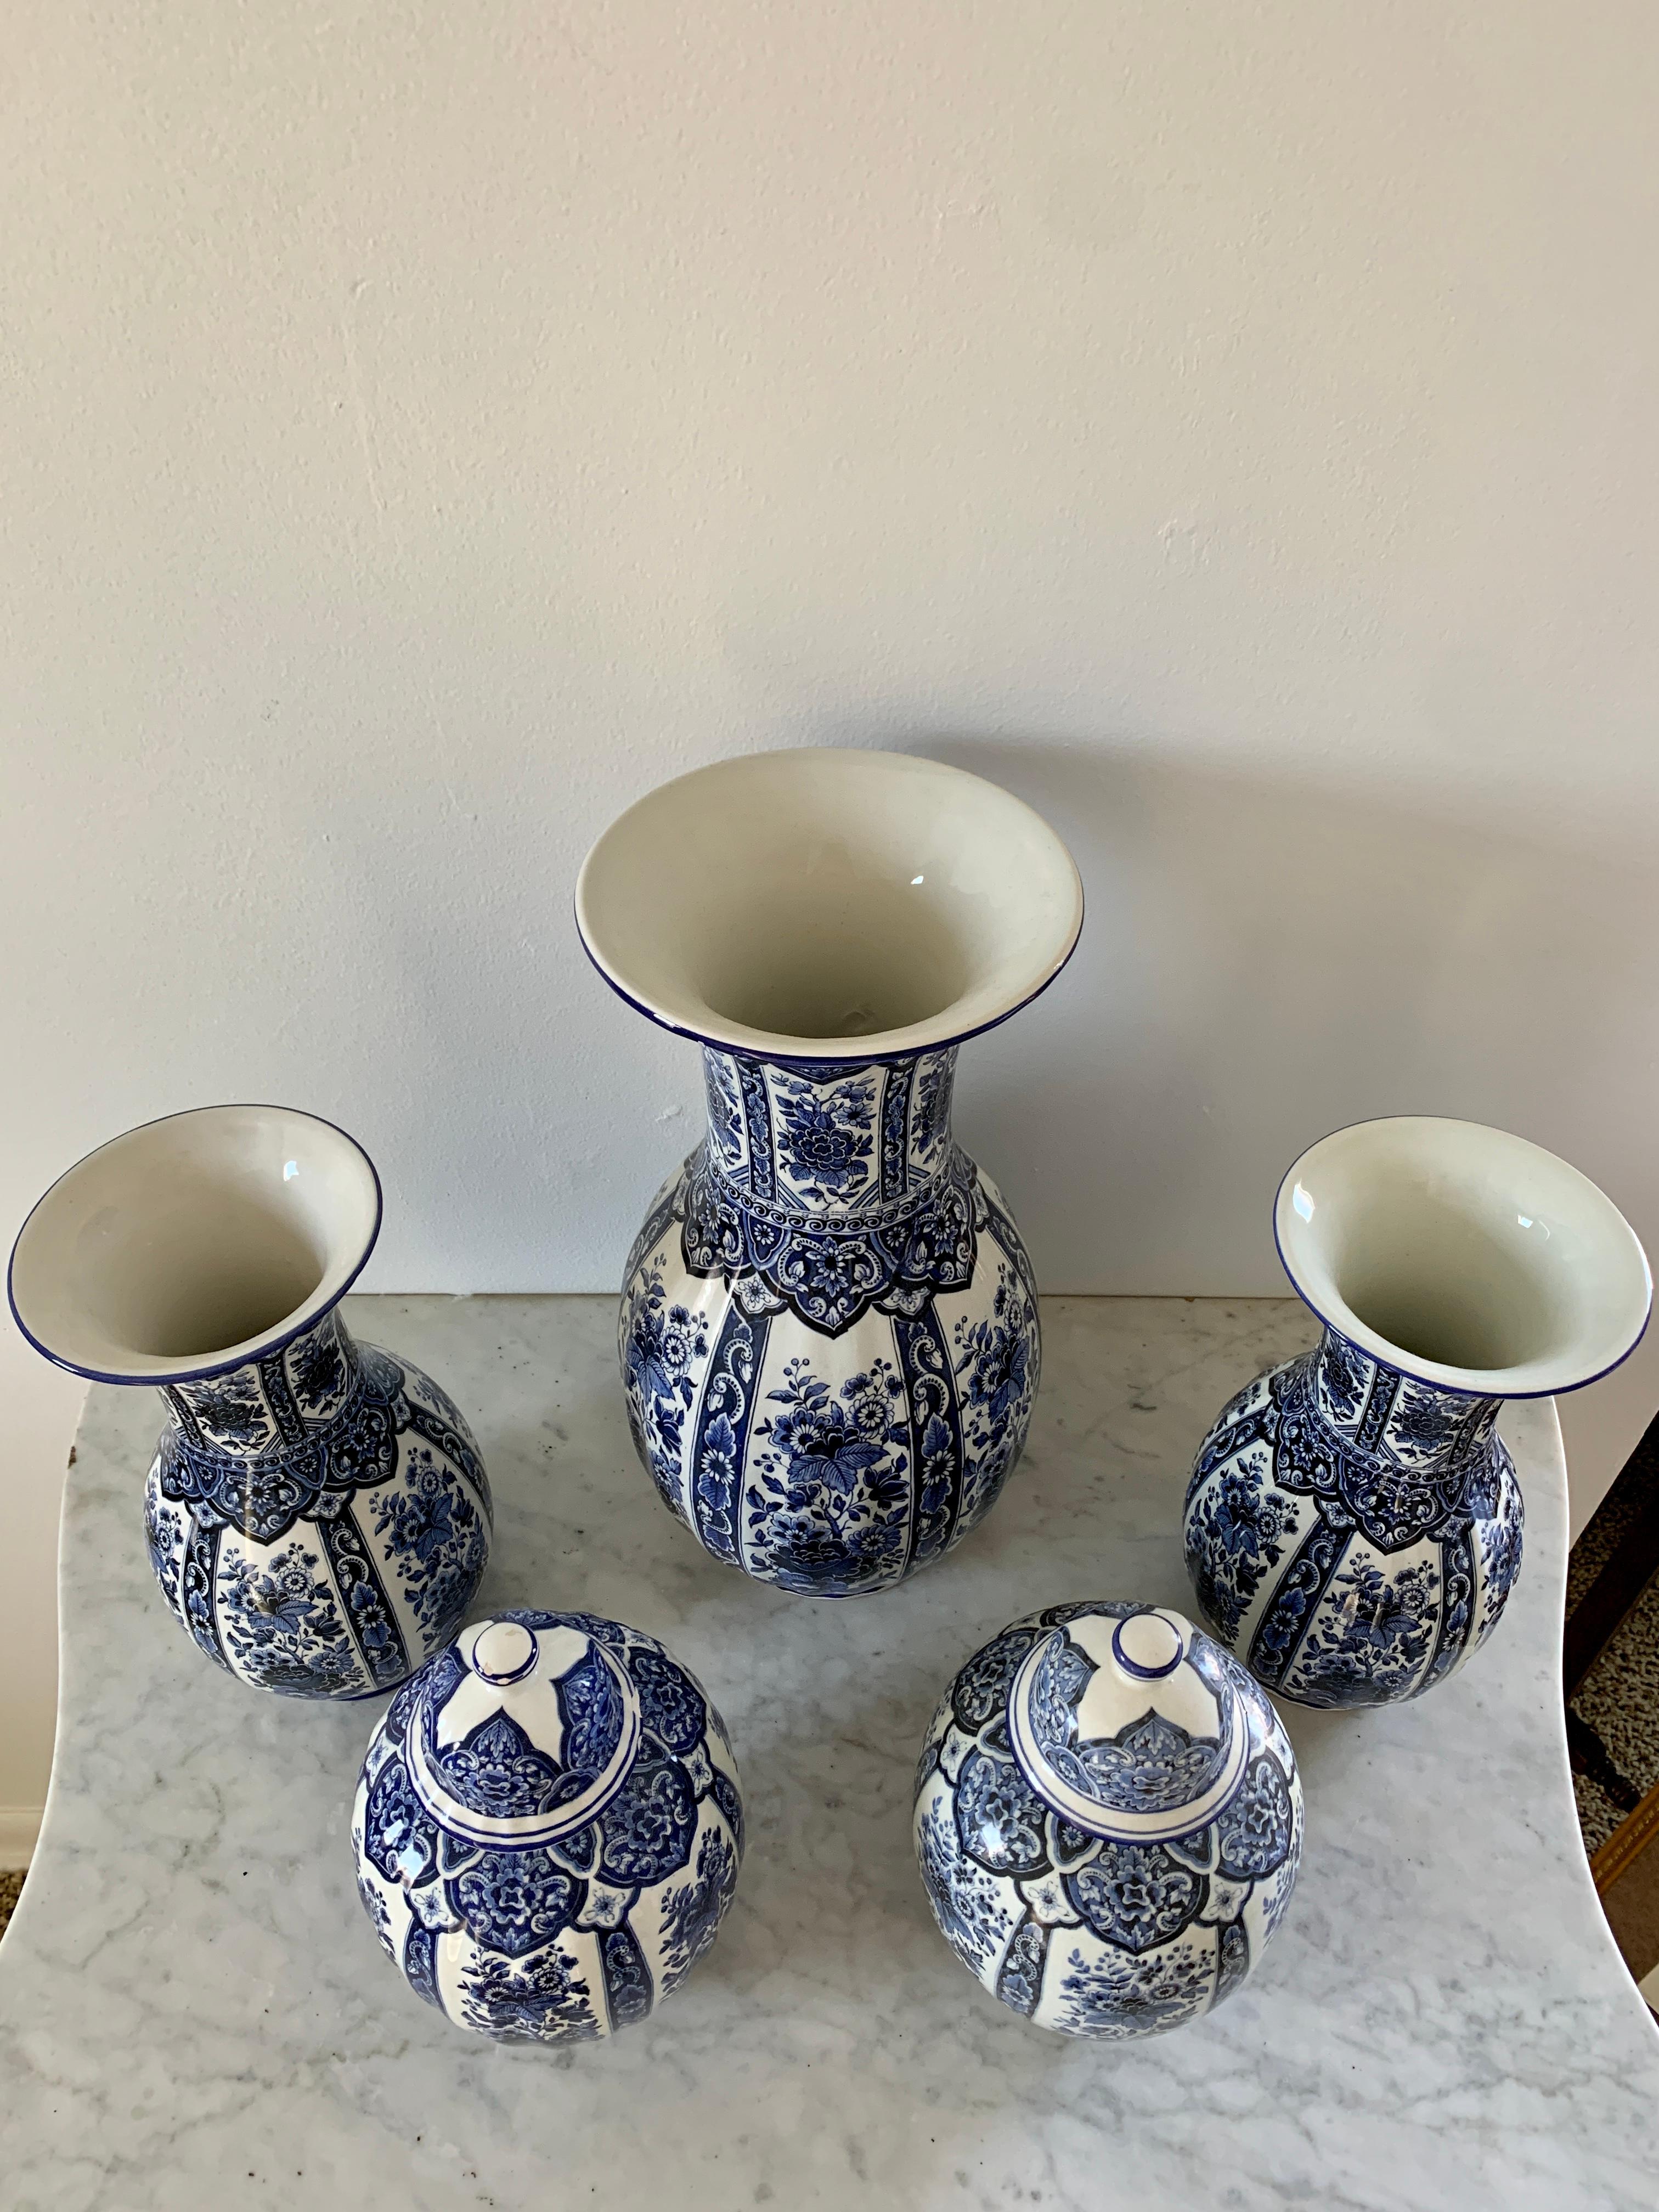 Un merveilleux ensemble de belles porcelaines italiennes bleu et blanc, comprenant trois vases et deux pots couverts. Une collection instantanée ! 

Par Ardalt Blue Delfia

Italie, Milieu du 20ème siècle

Le grand vase mesure : 7ʺW × 7ʺD ×